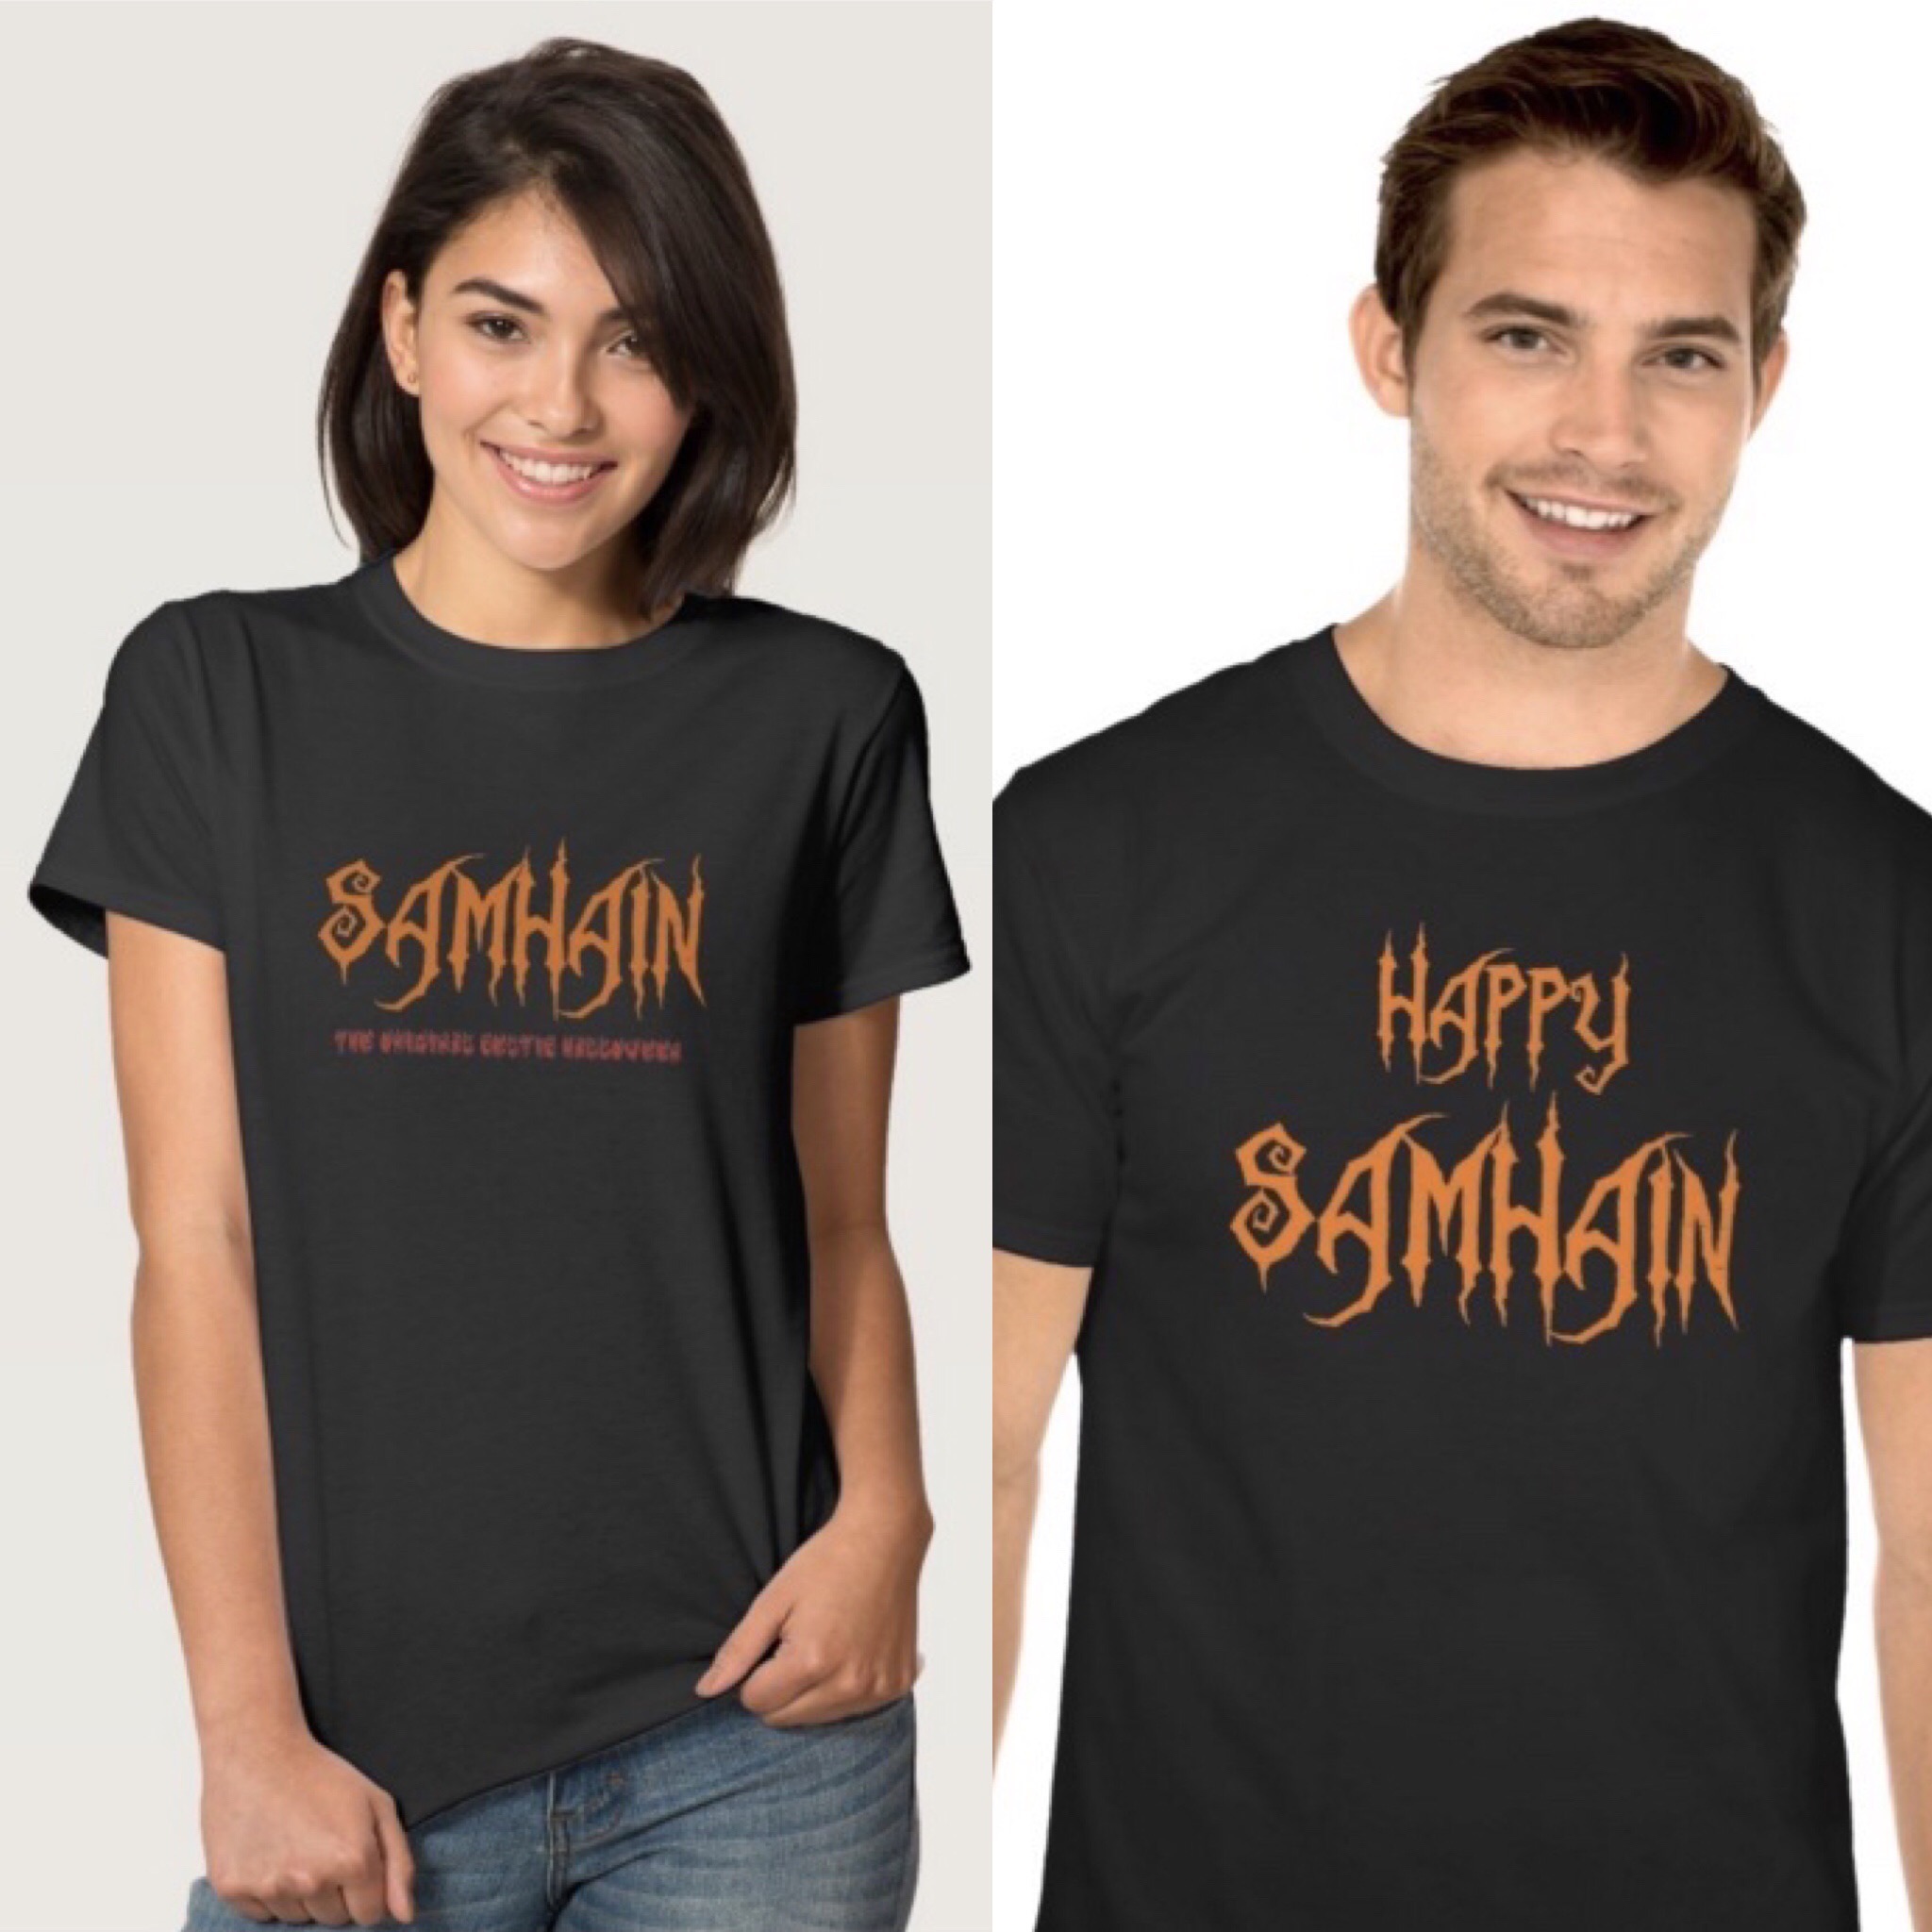 Samhain t-shirts